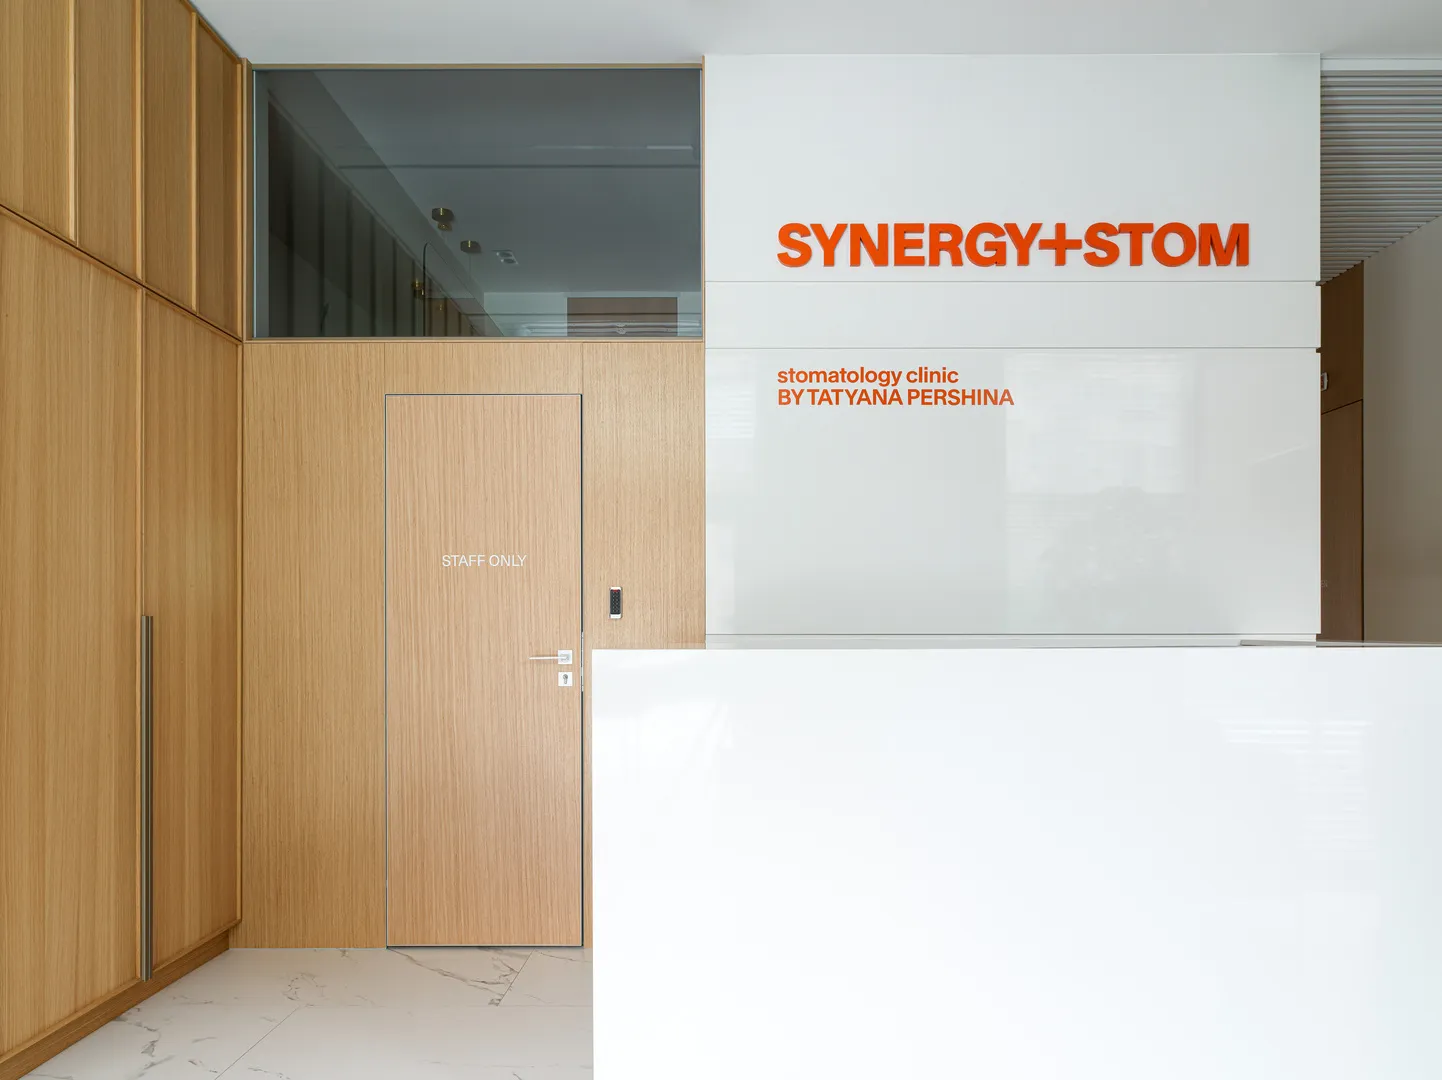 О клинике Synergy+Stom